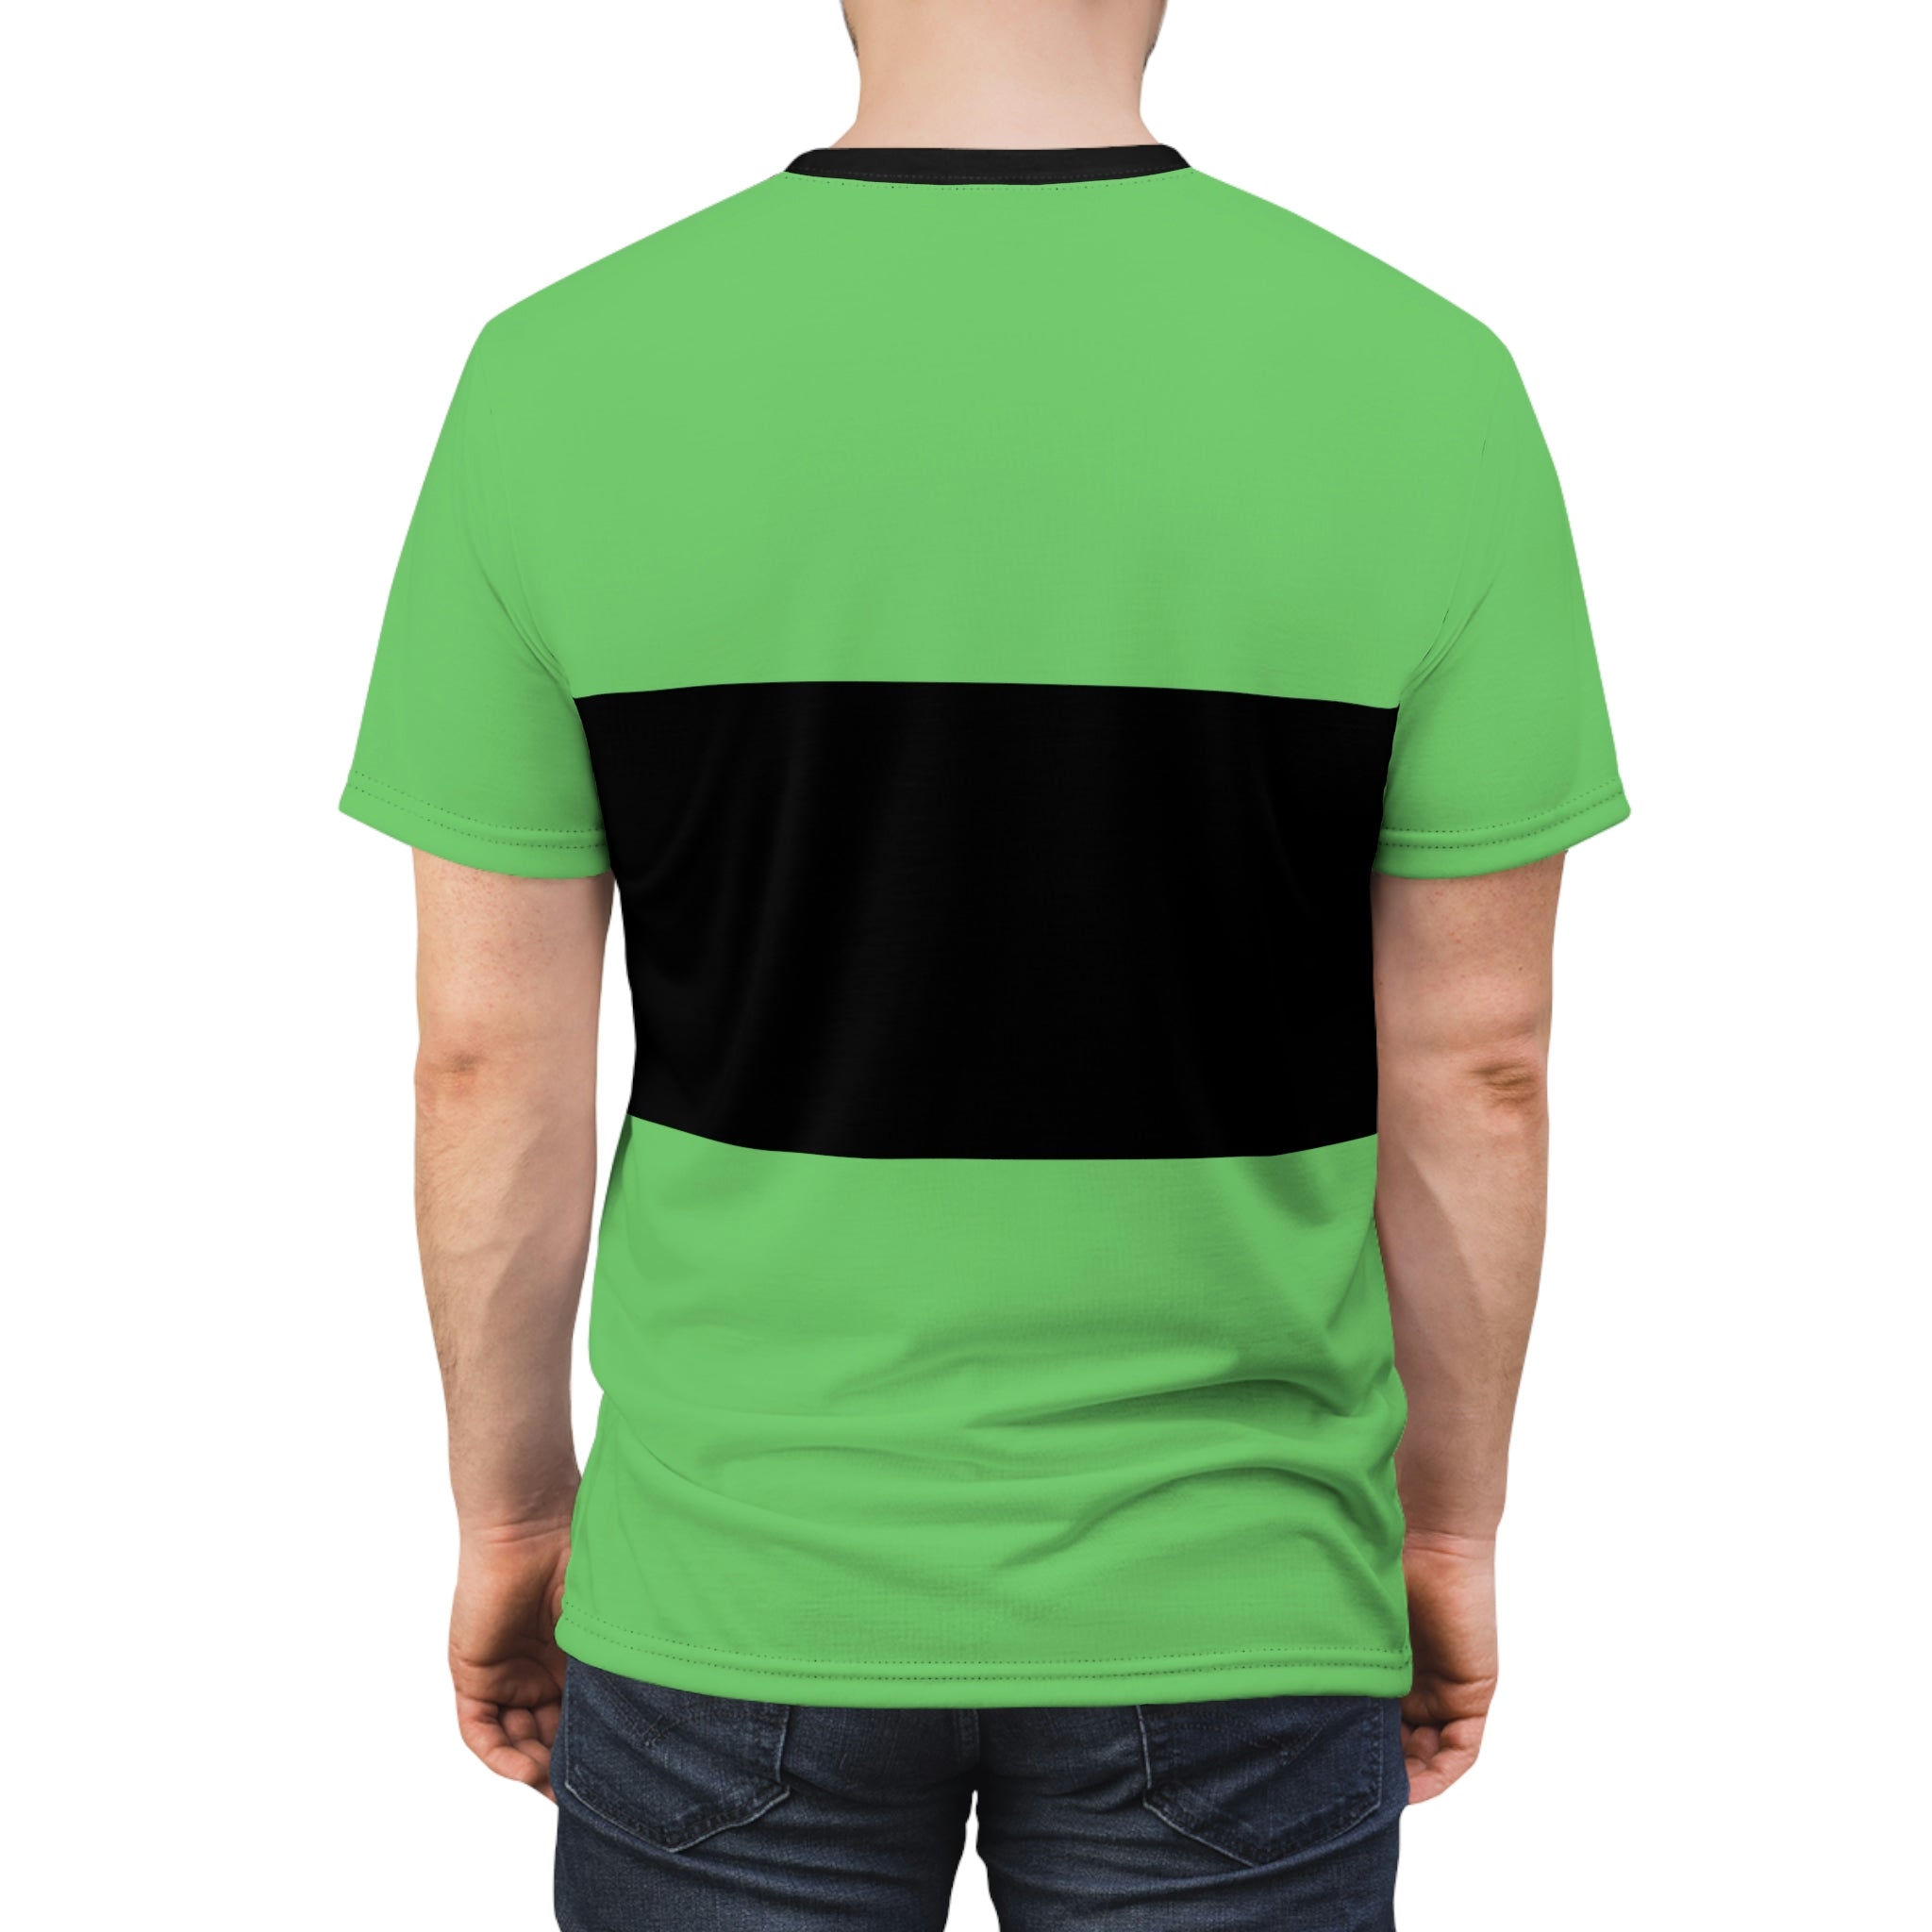 Powerpuff Green Costume Short Sleeve Shirt Buttercup